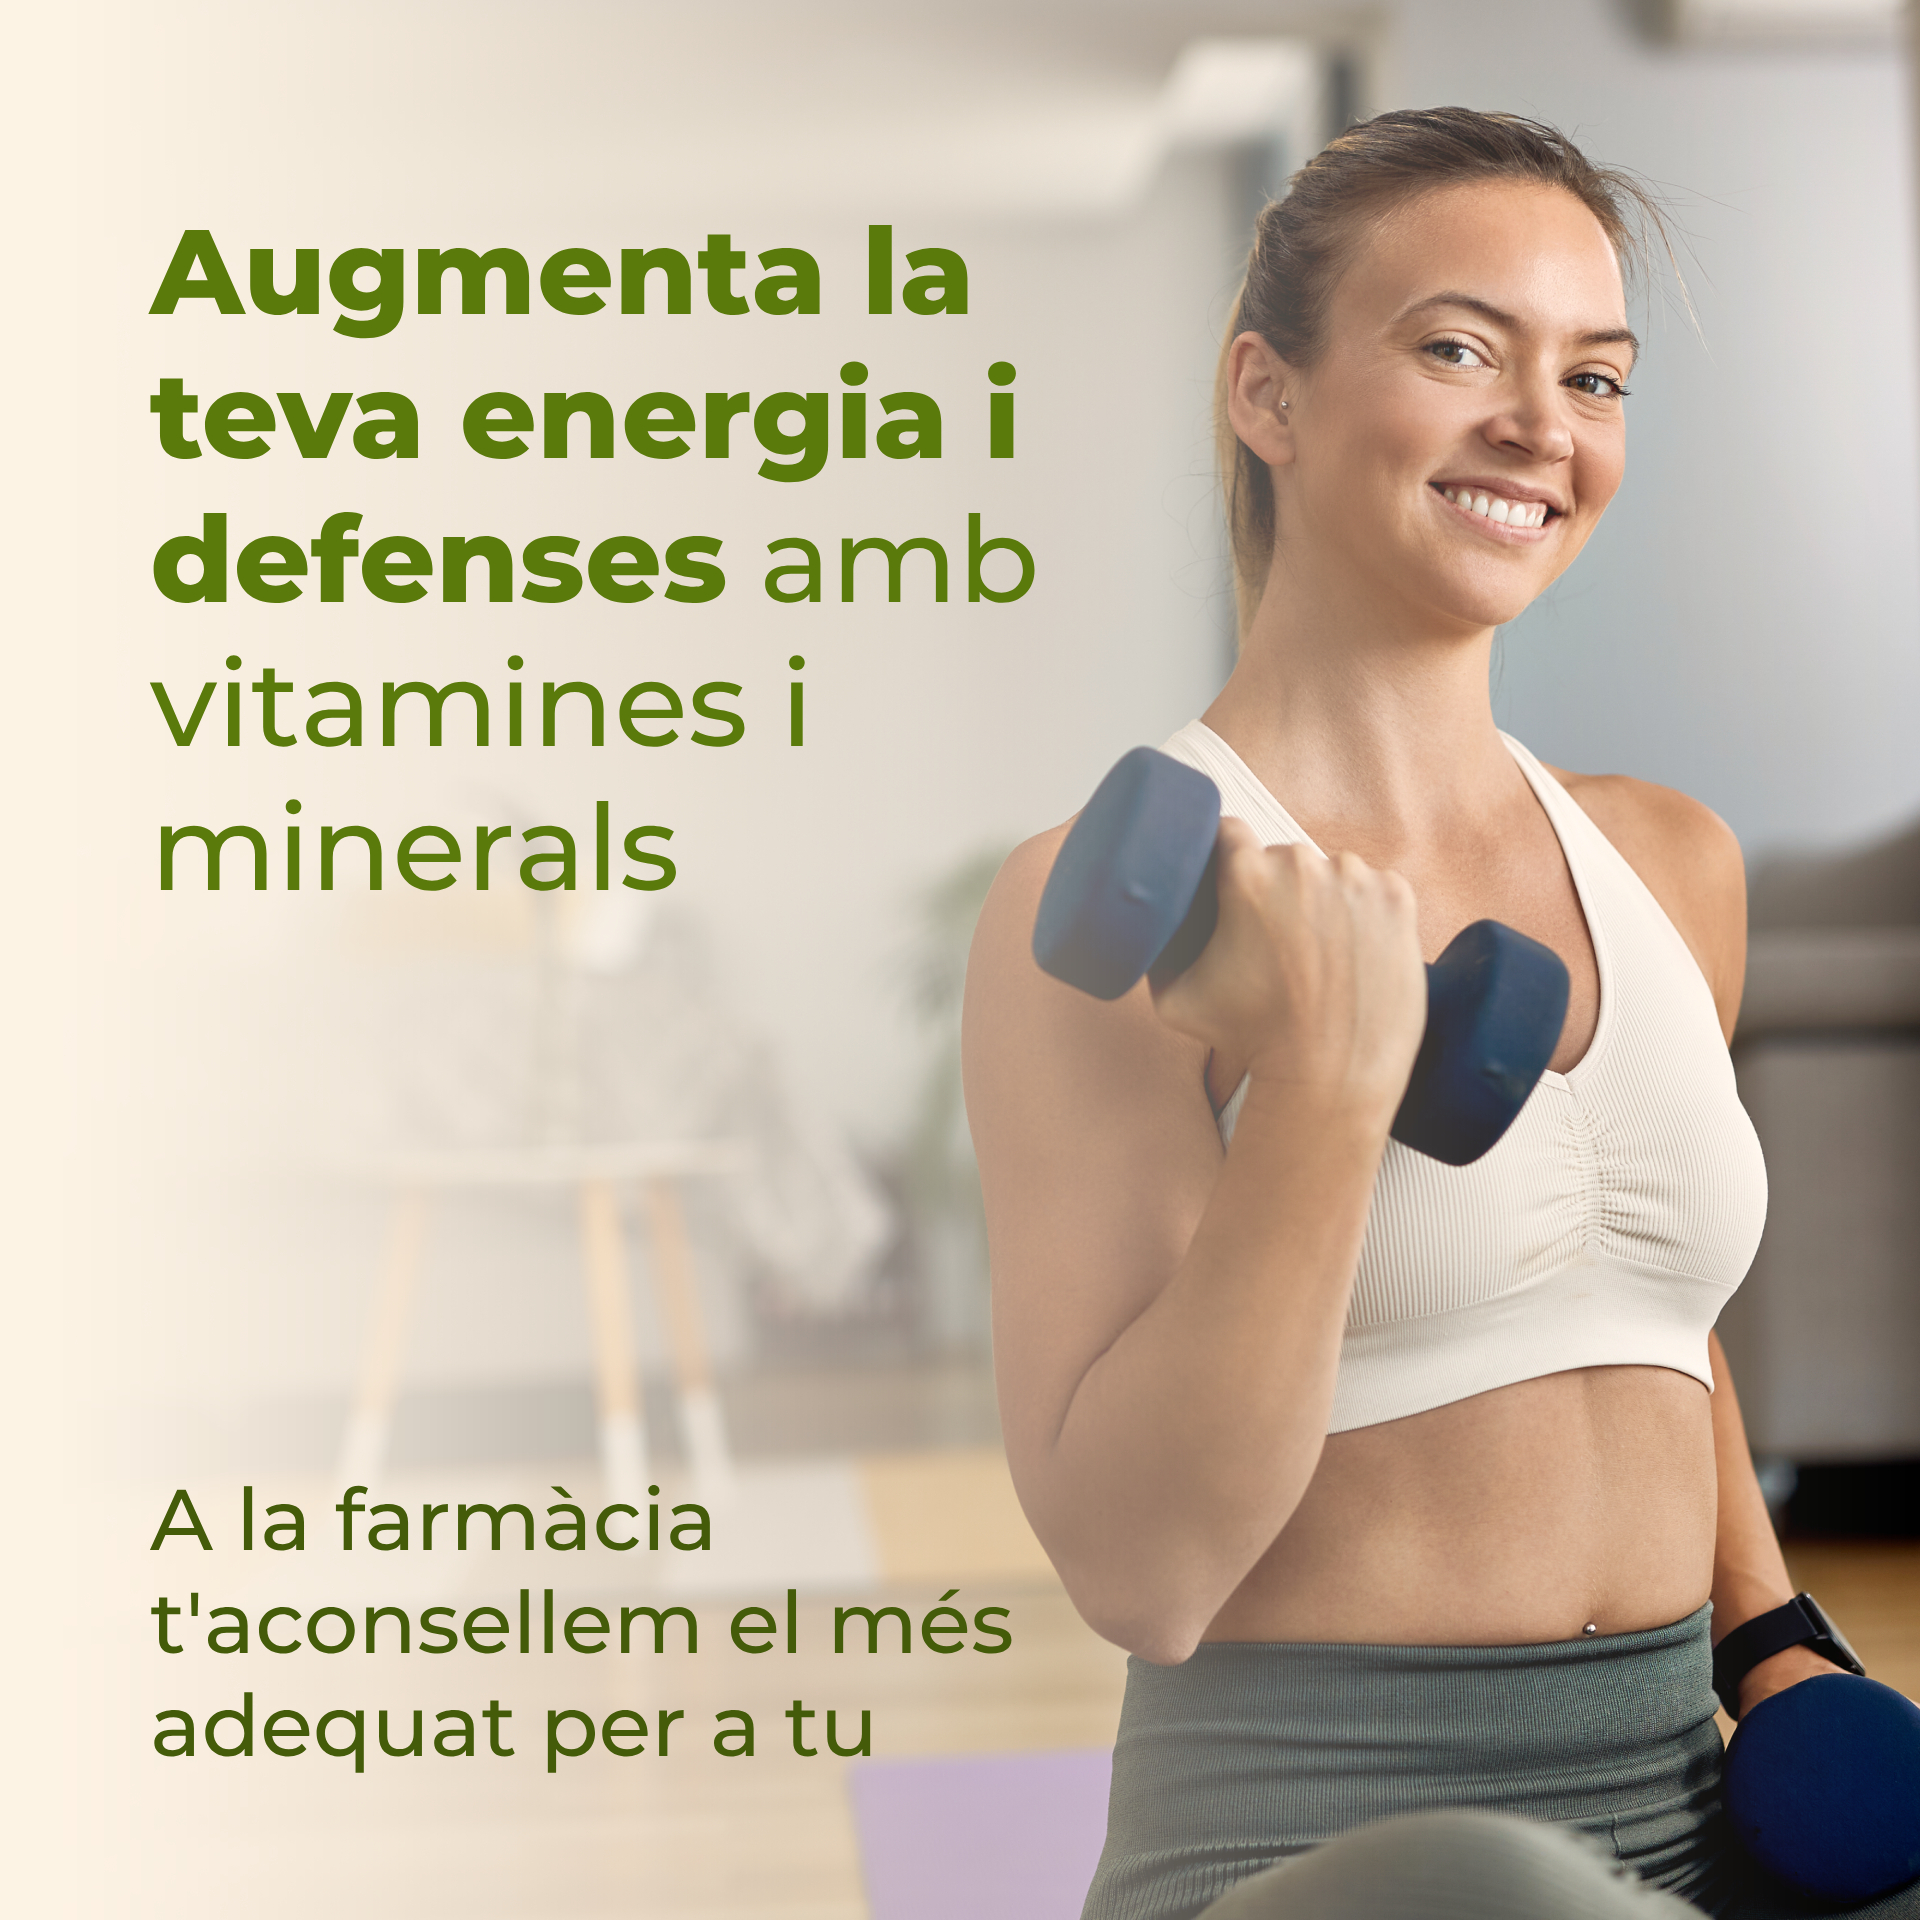 Augmenta la teva energia i defenses amb vitamines i minerals. A la farmàcia t'aconsellem el més adequat per a tu.